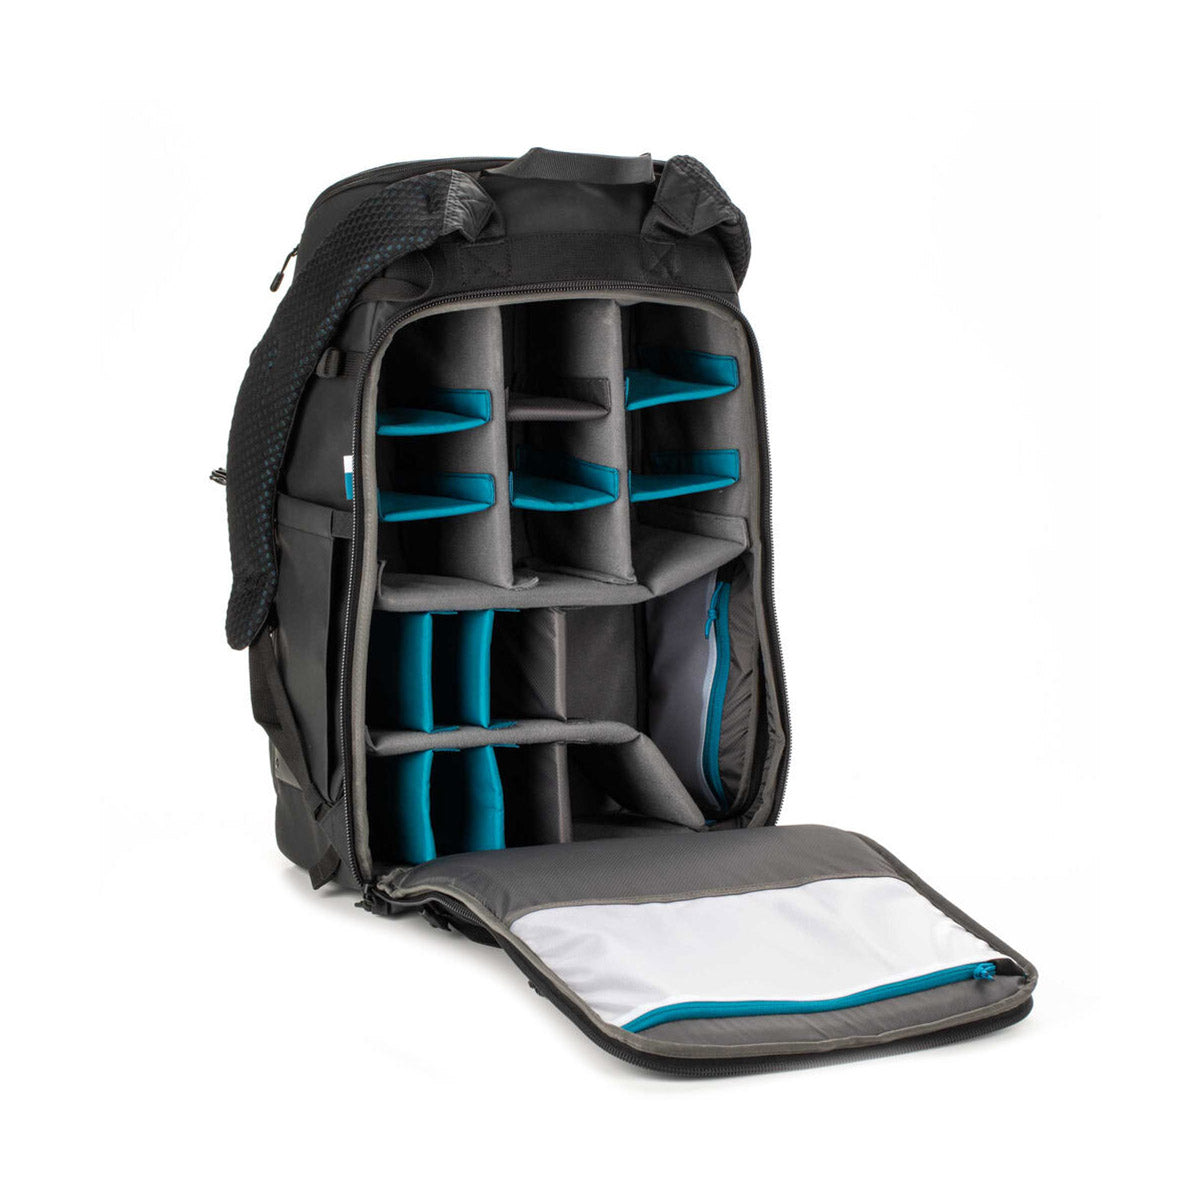 Tenba Axis V2 32L Backpack (Black)